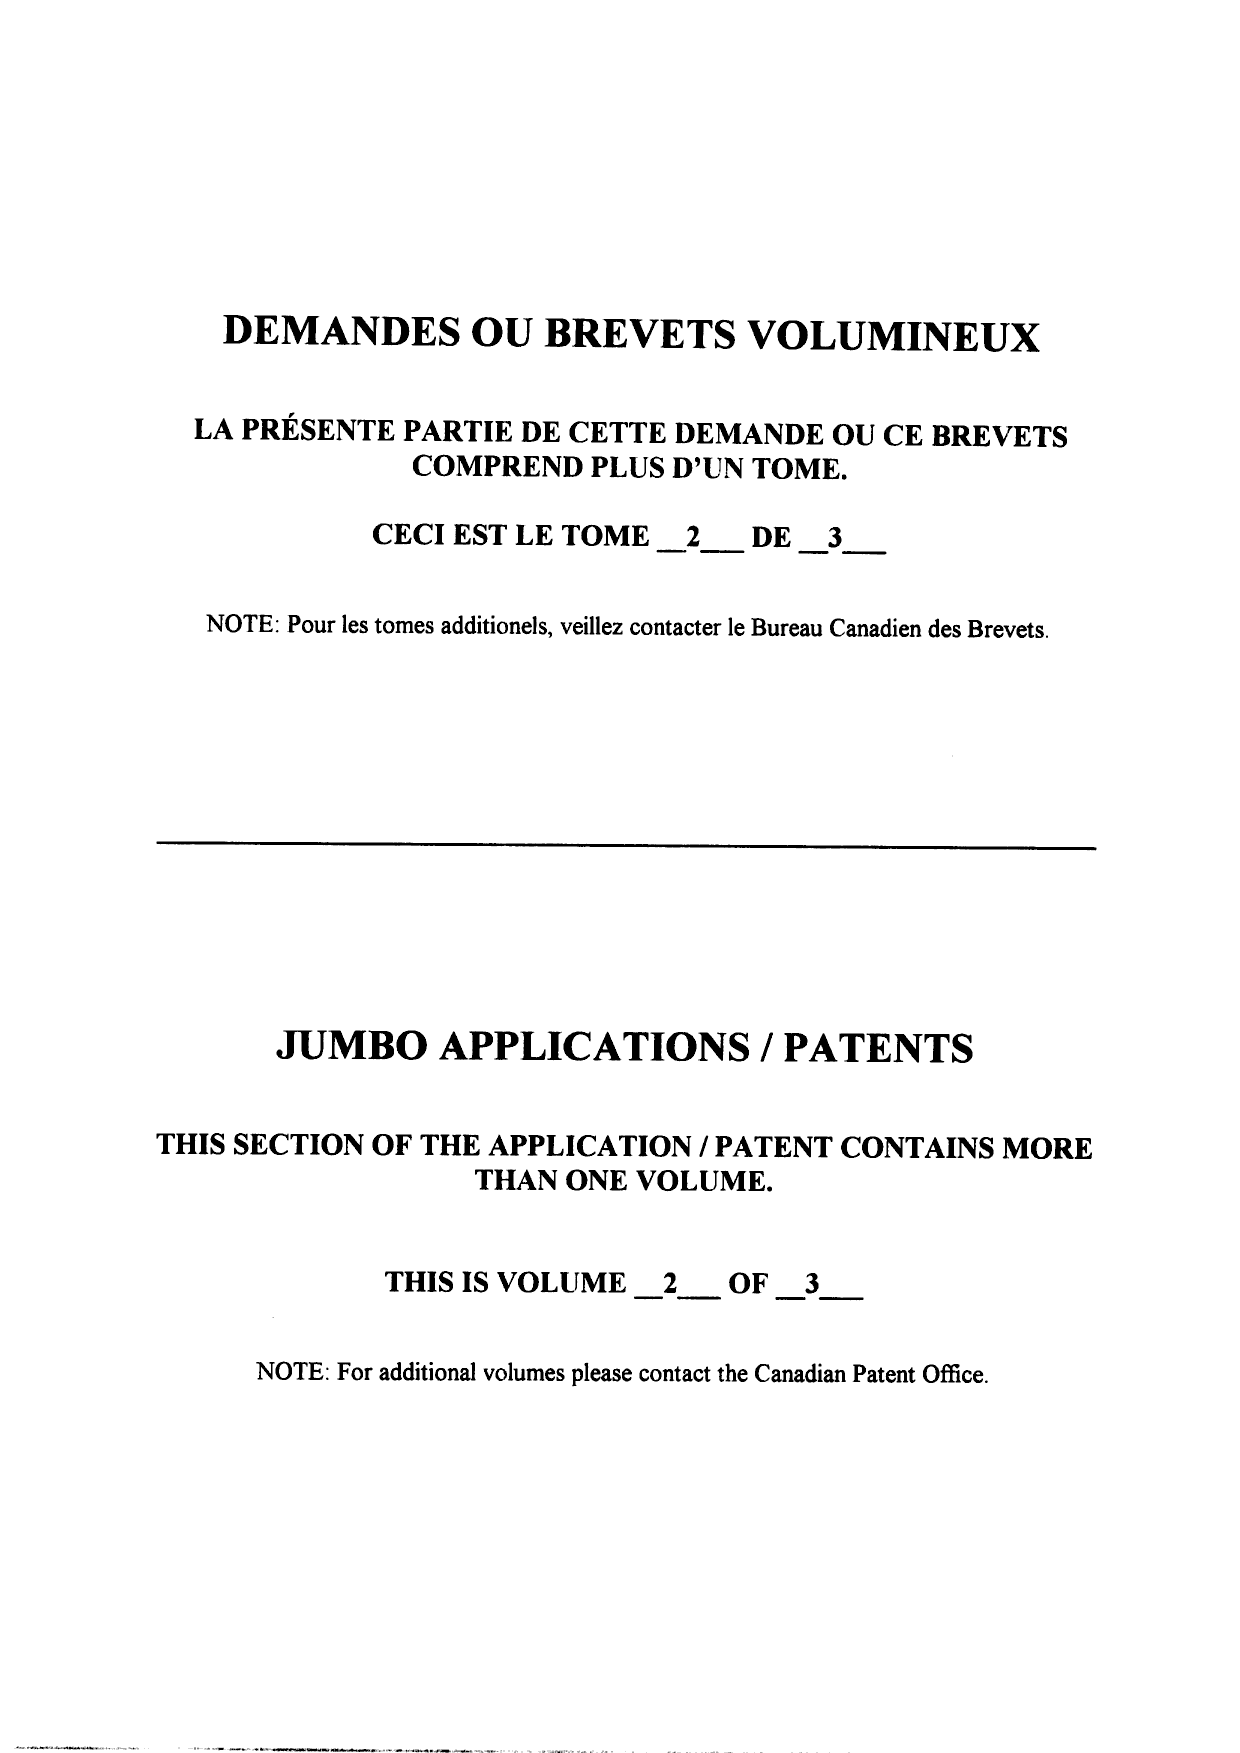 Canadian Patent Document 2475247. Description 20101216. Image 55 of 55